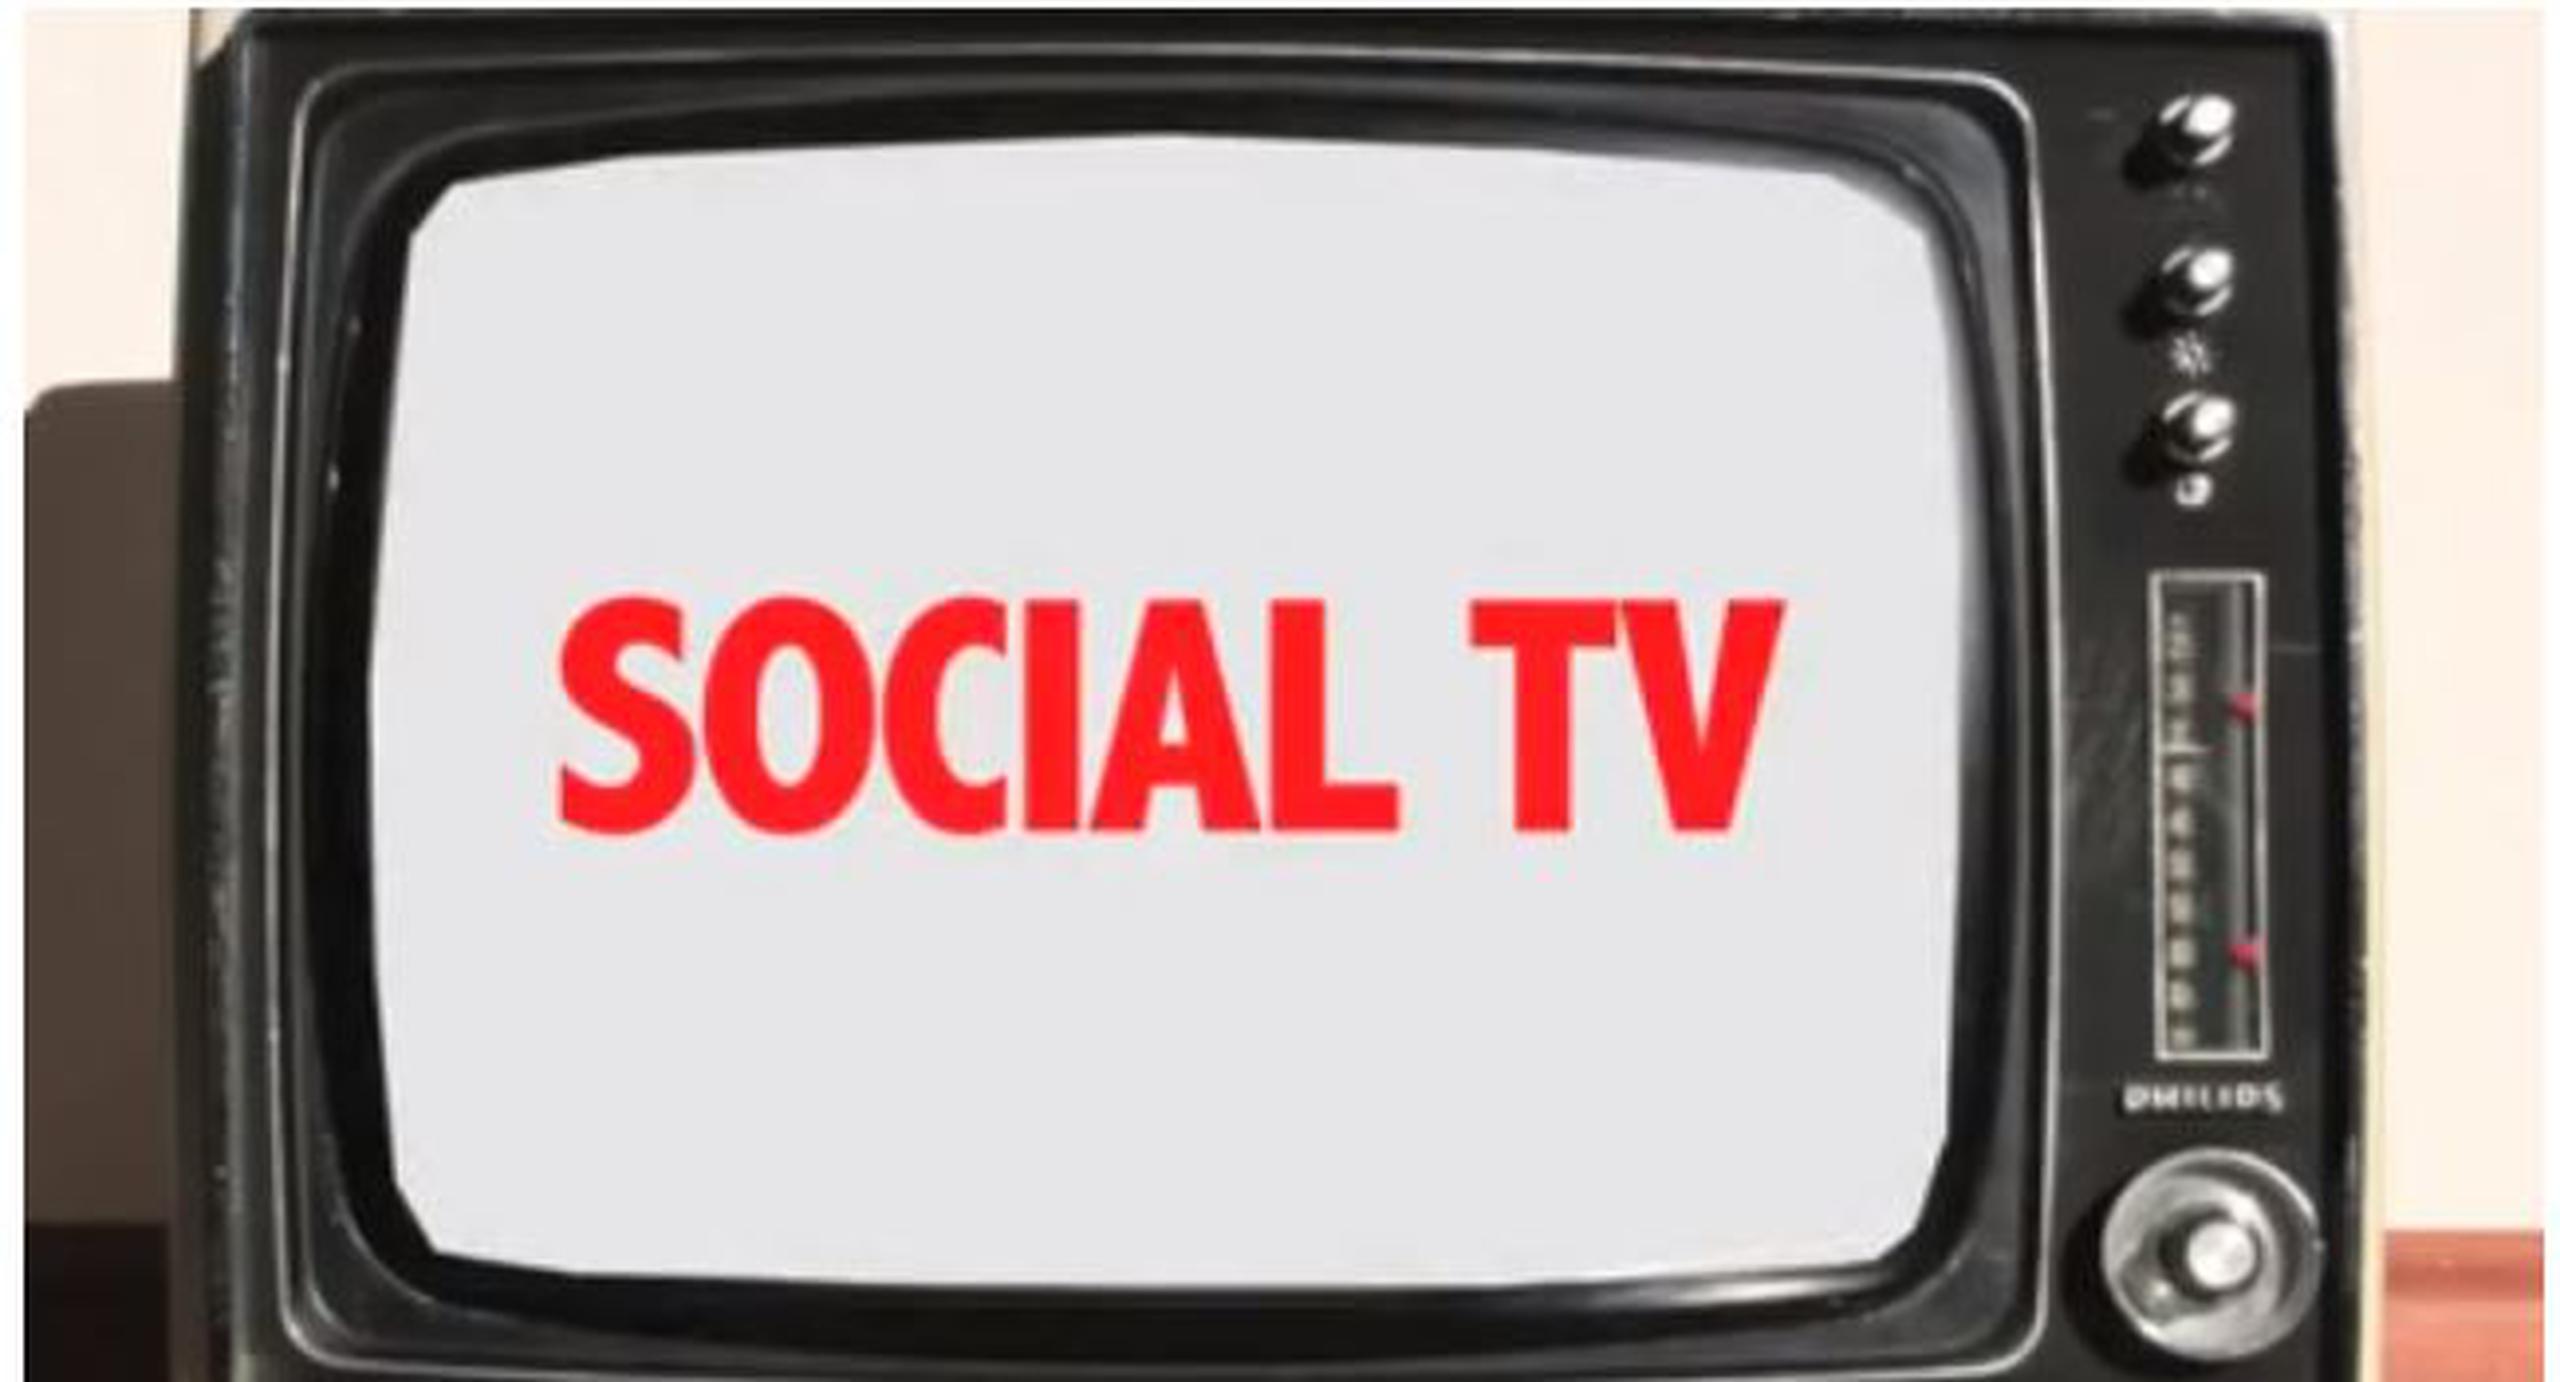 La manera de ver televisión se transformó. Todo cambió. El fenómeno de las “dos pantallas” y la tendencia “social TV” es una realidad en crecimiento.(YouTube)